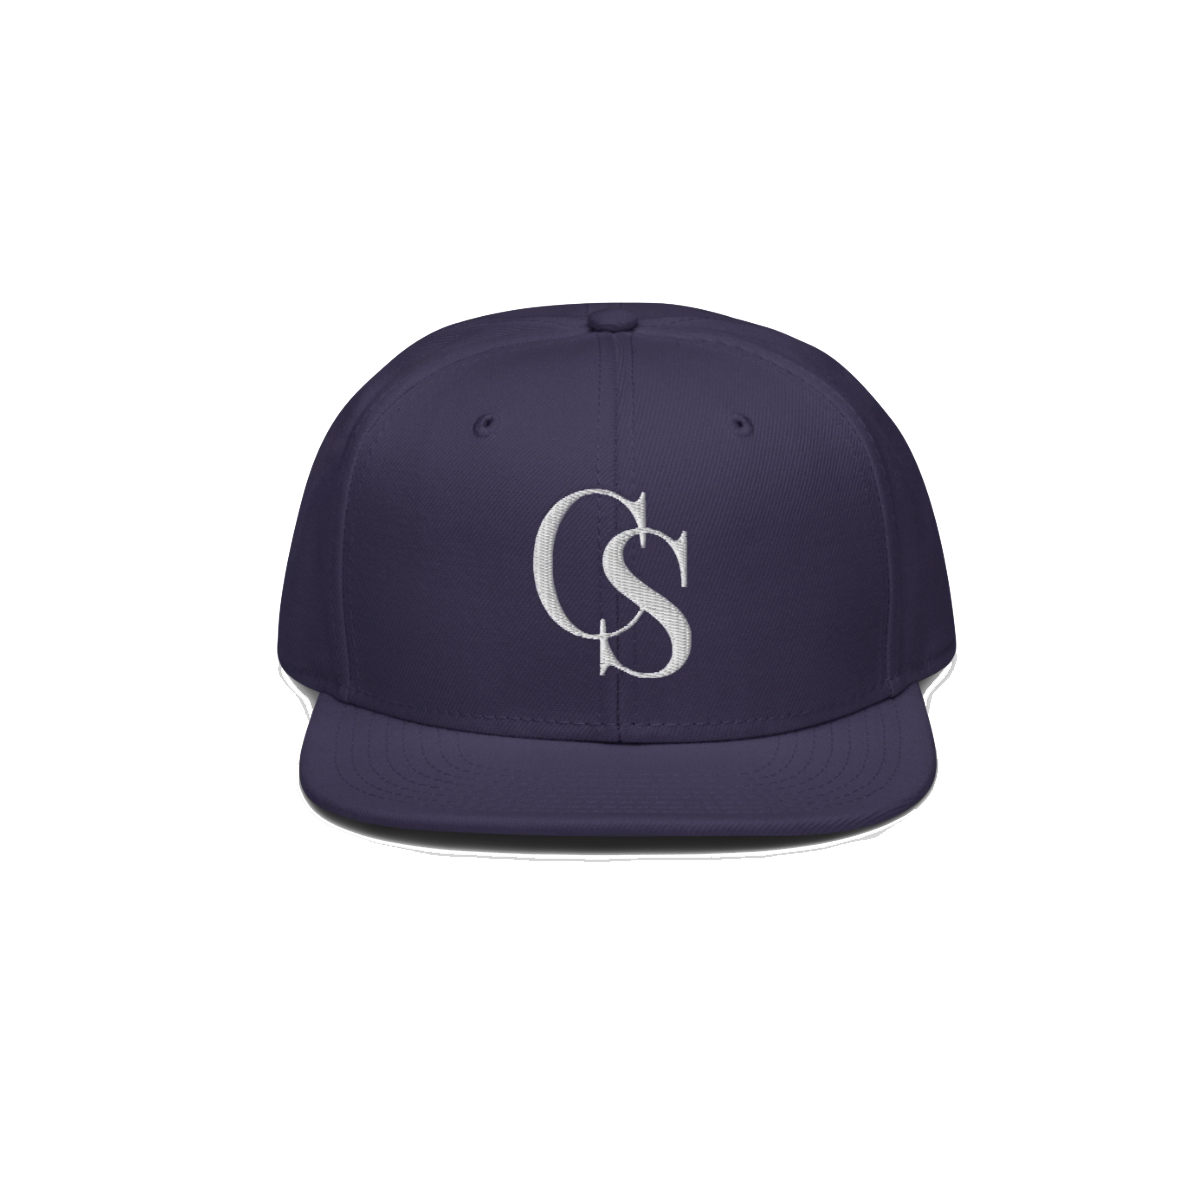 Calum Scott - CS Embroidered Hat